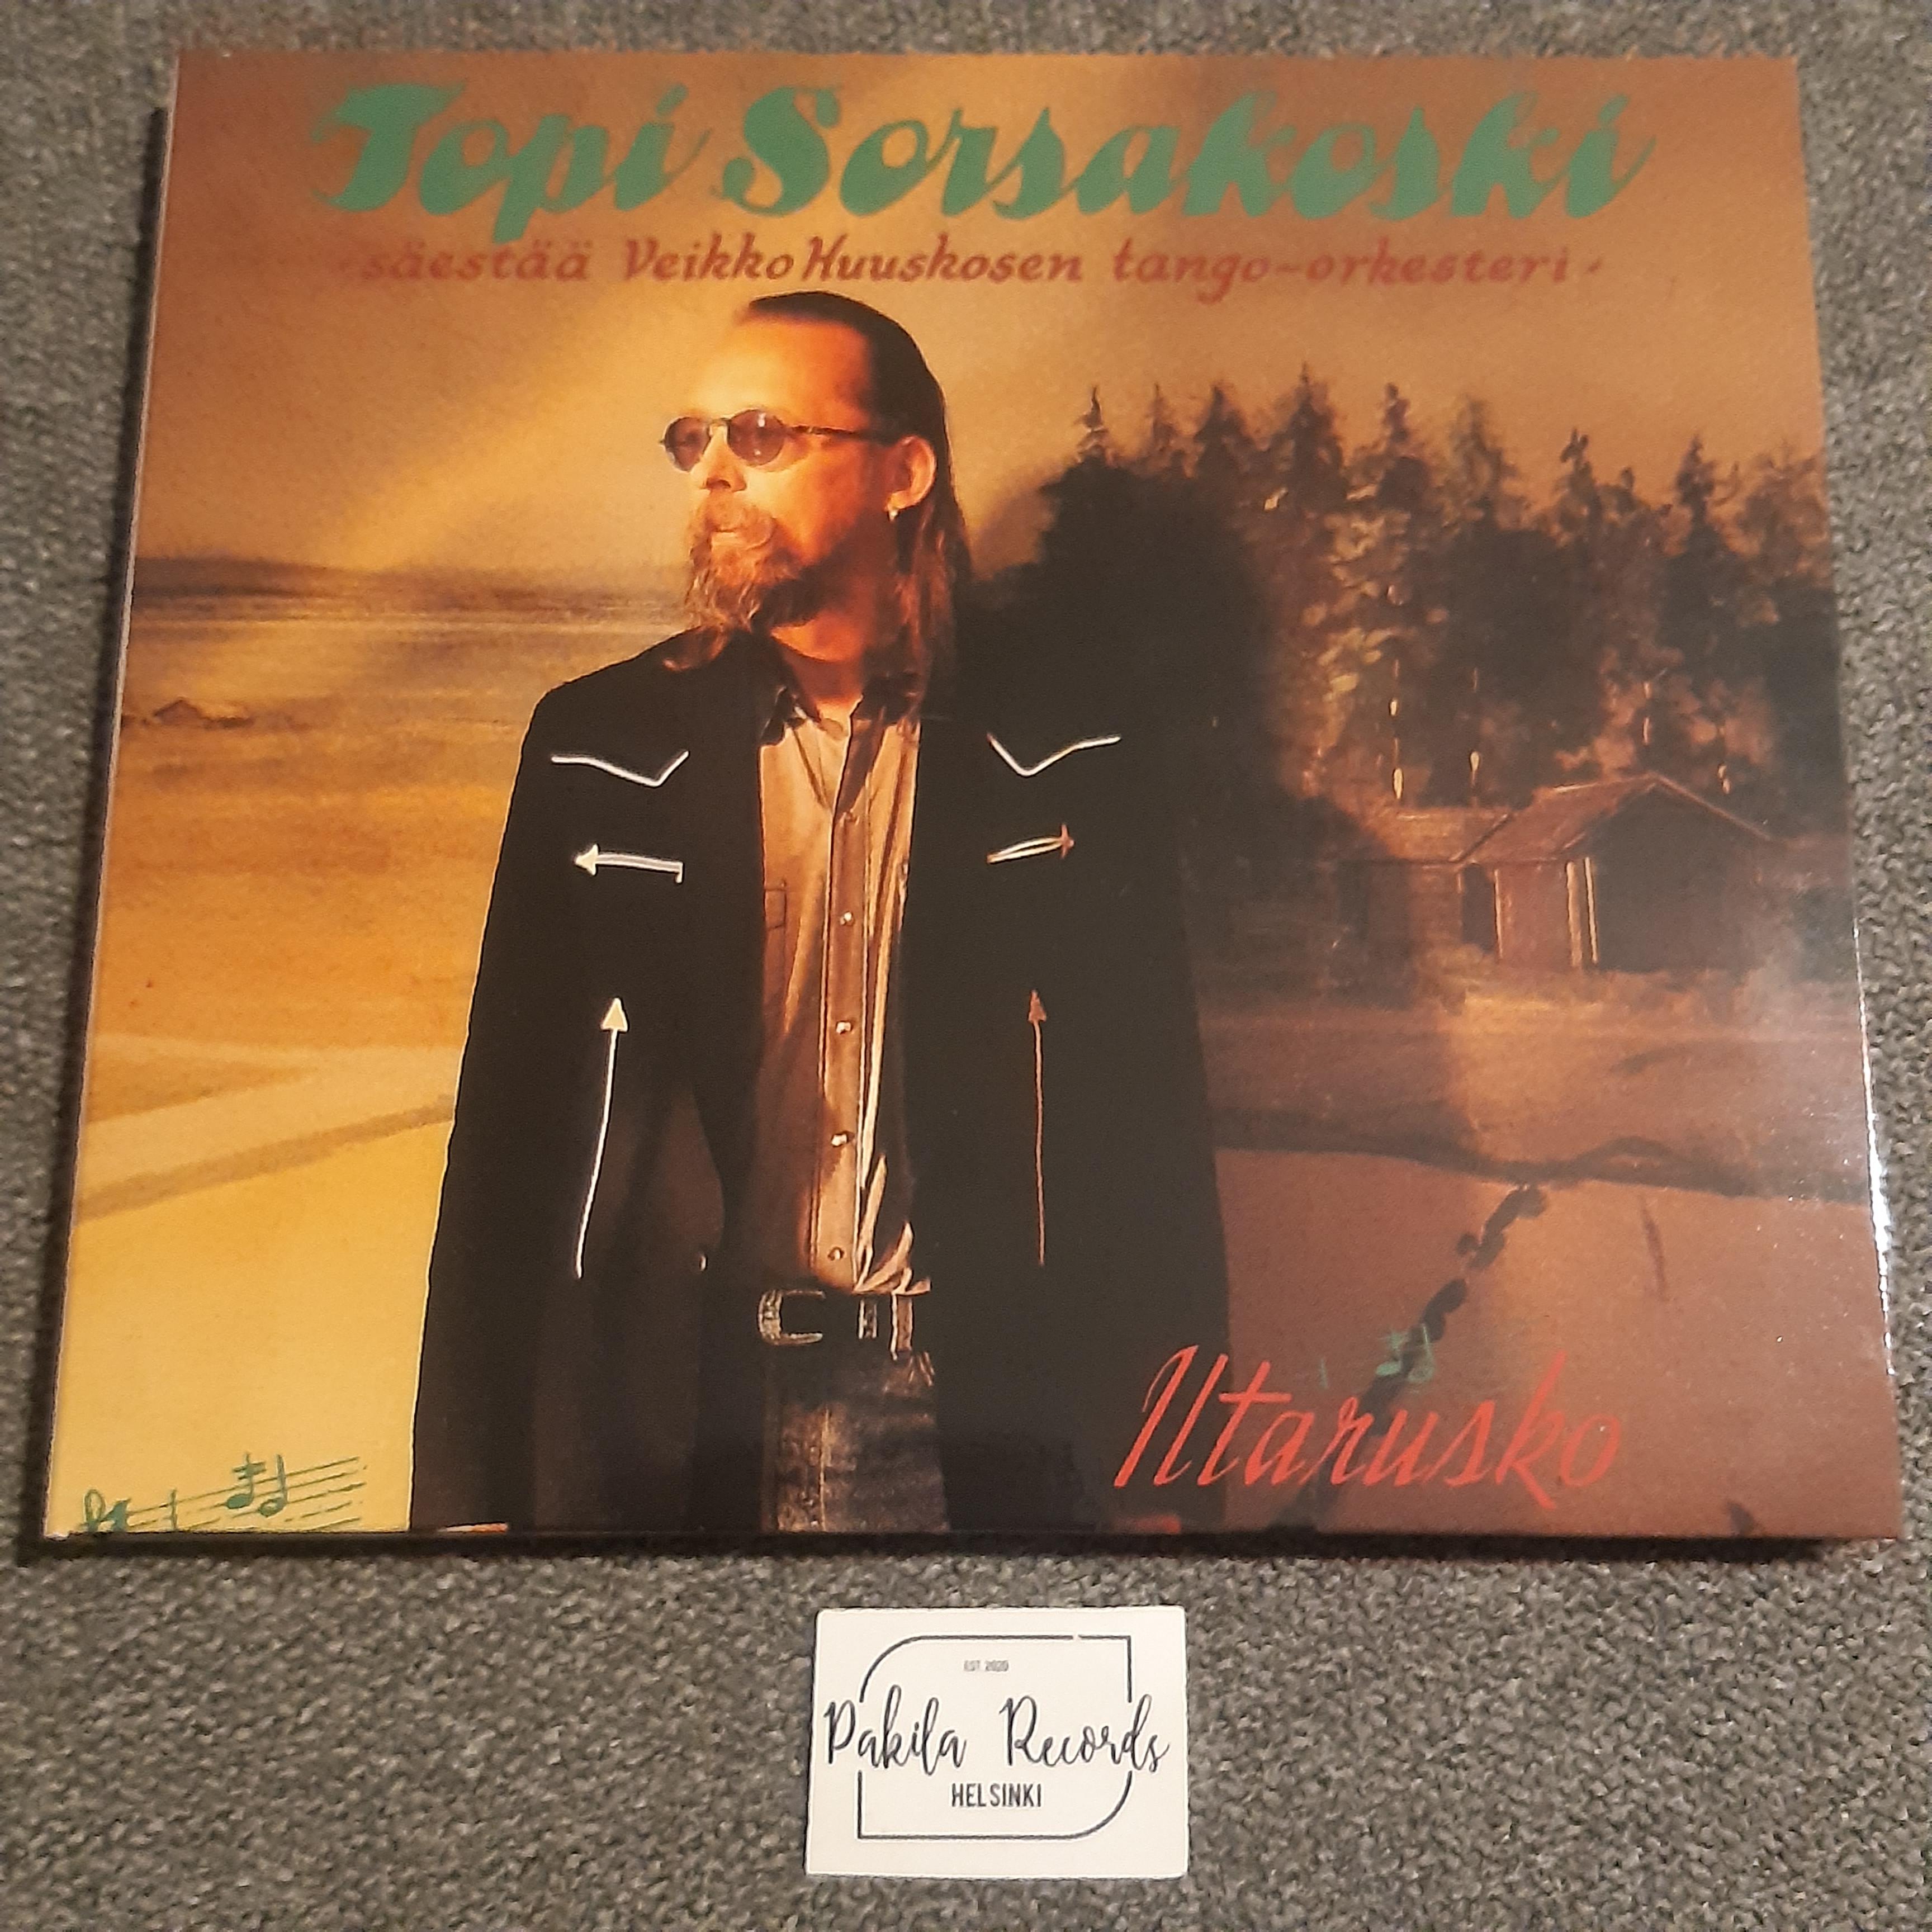 Topi Sorsakoski - Iltarusko - CD ( käytetty)